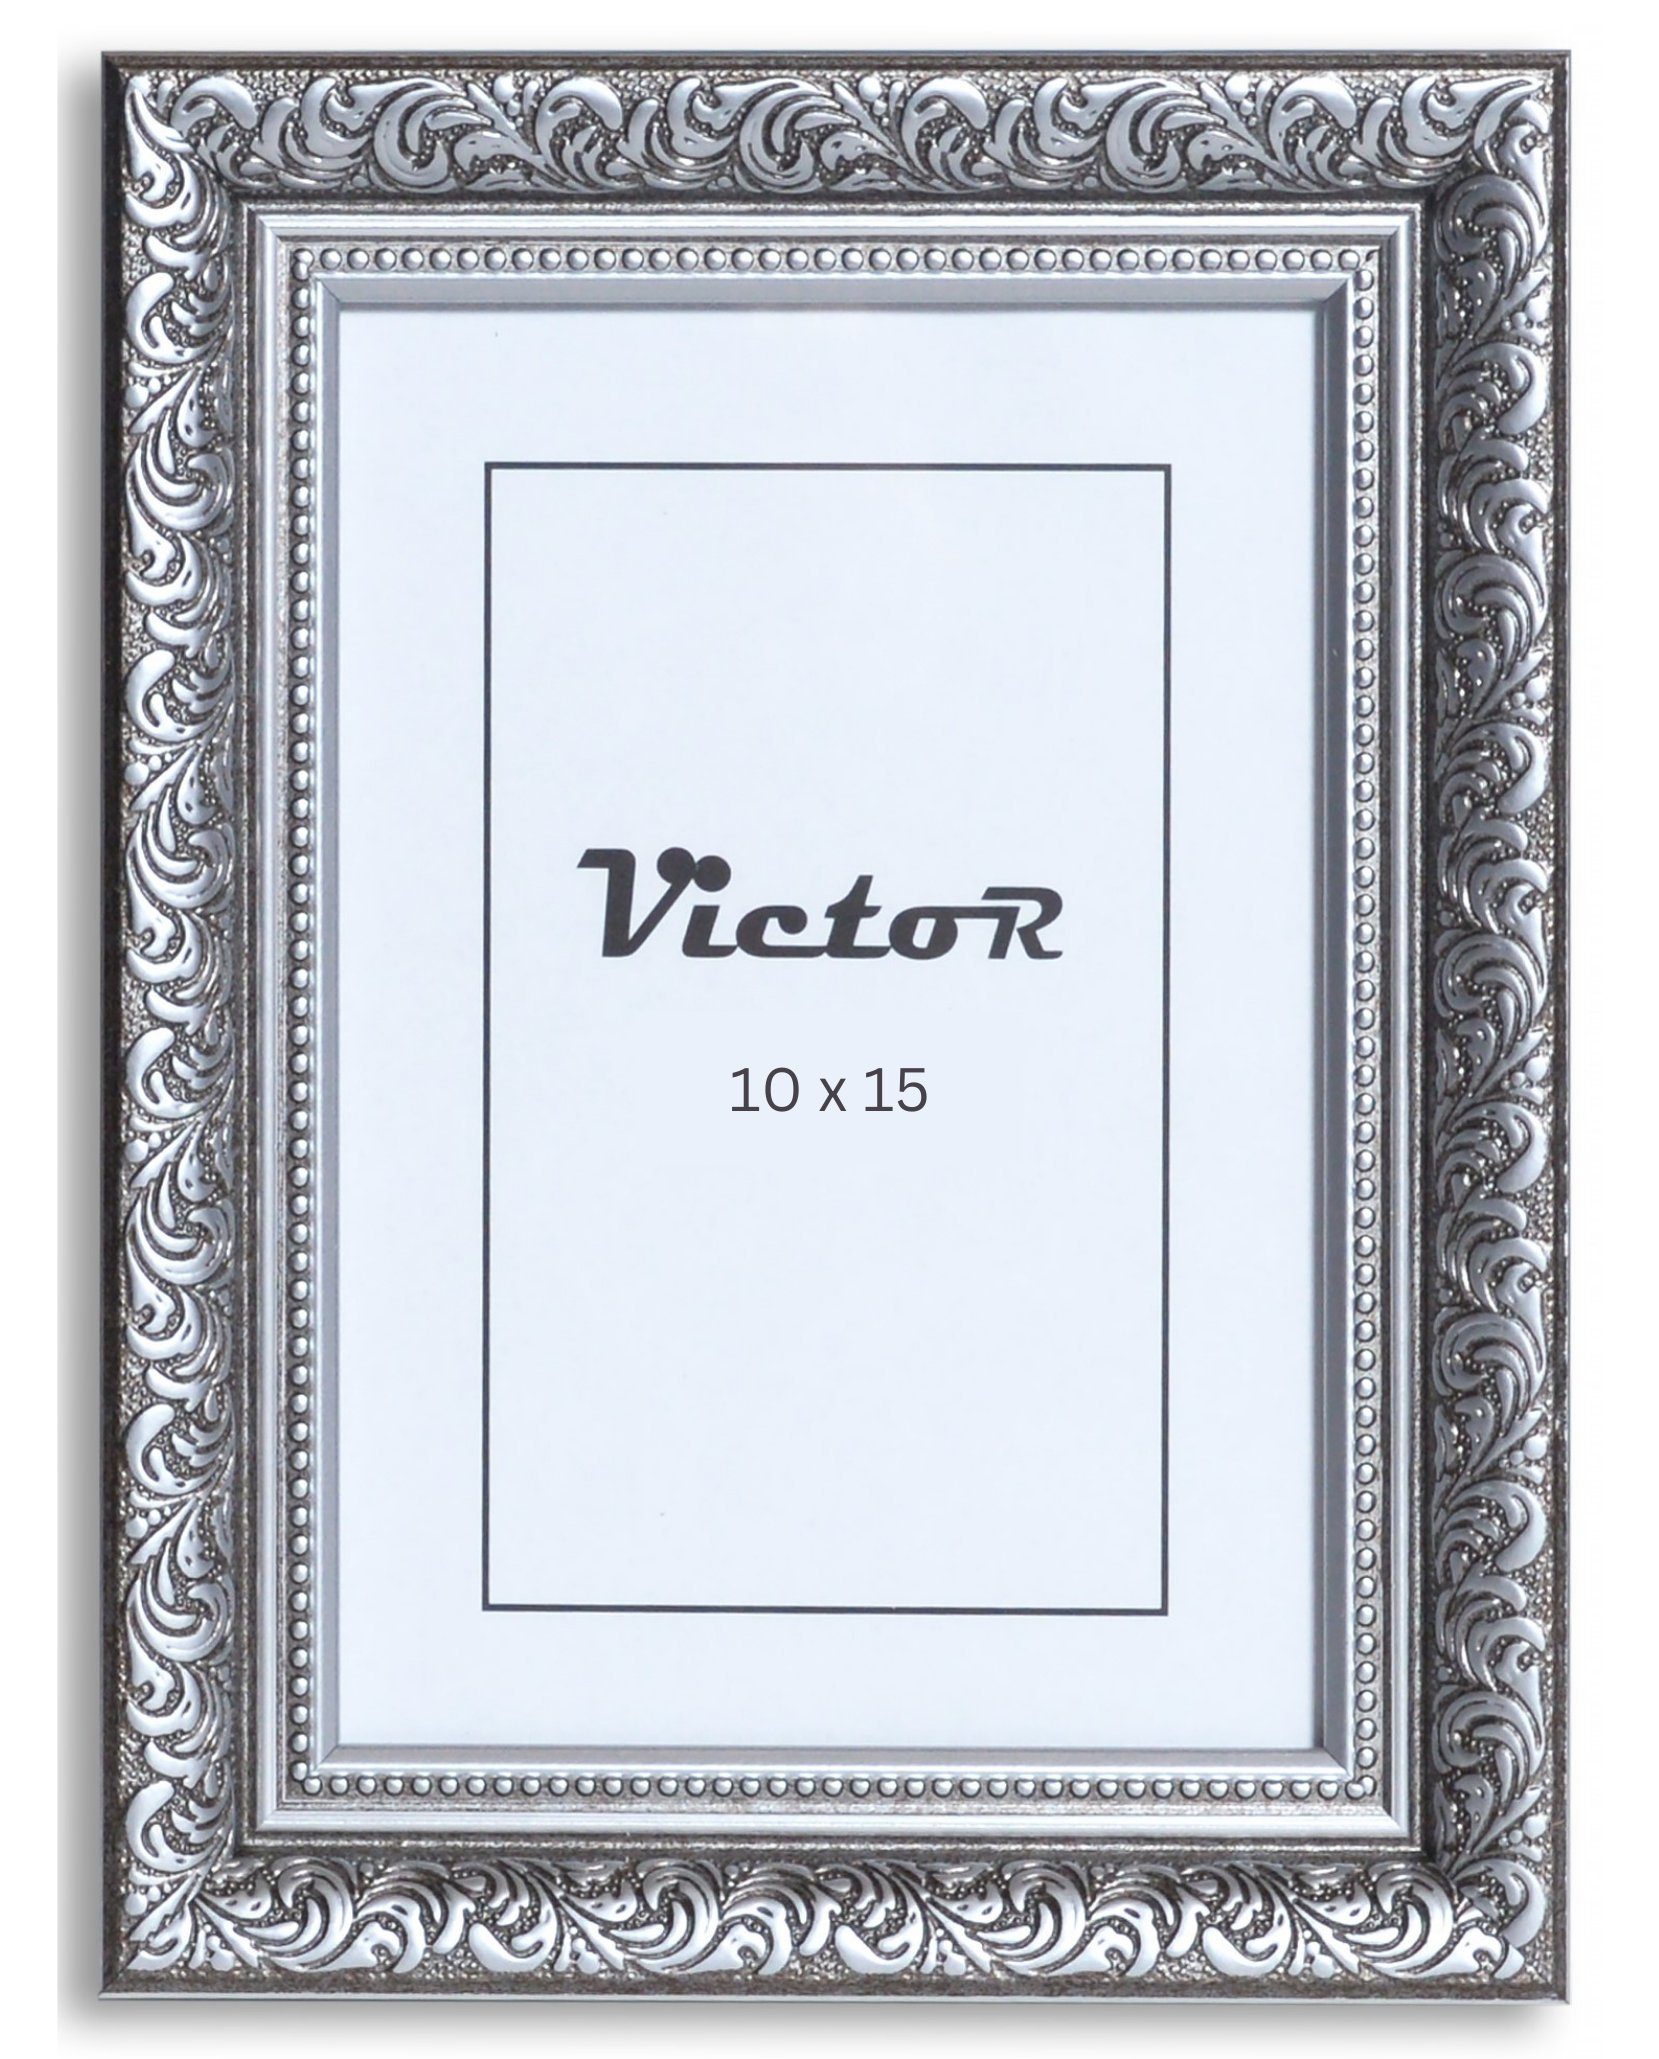 Victor (Zenith) Bilderrahmen A6, Antik 10x15 Schwarz Rubens, Bilderrahmen Barock, cm Bilderrahmen Silber